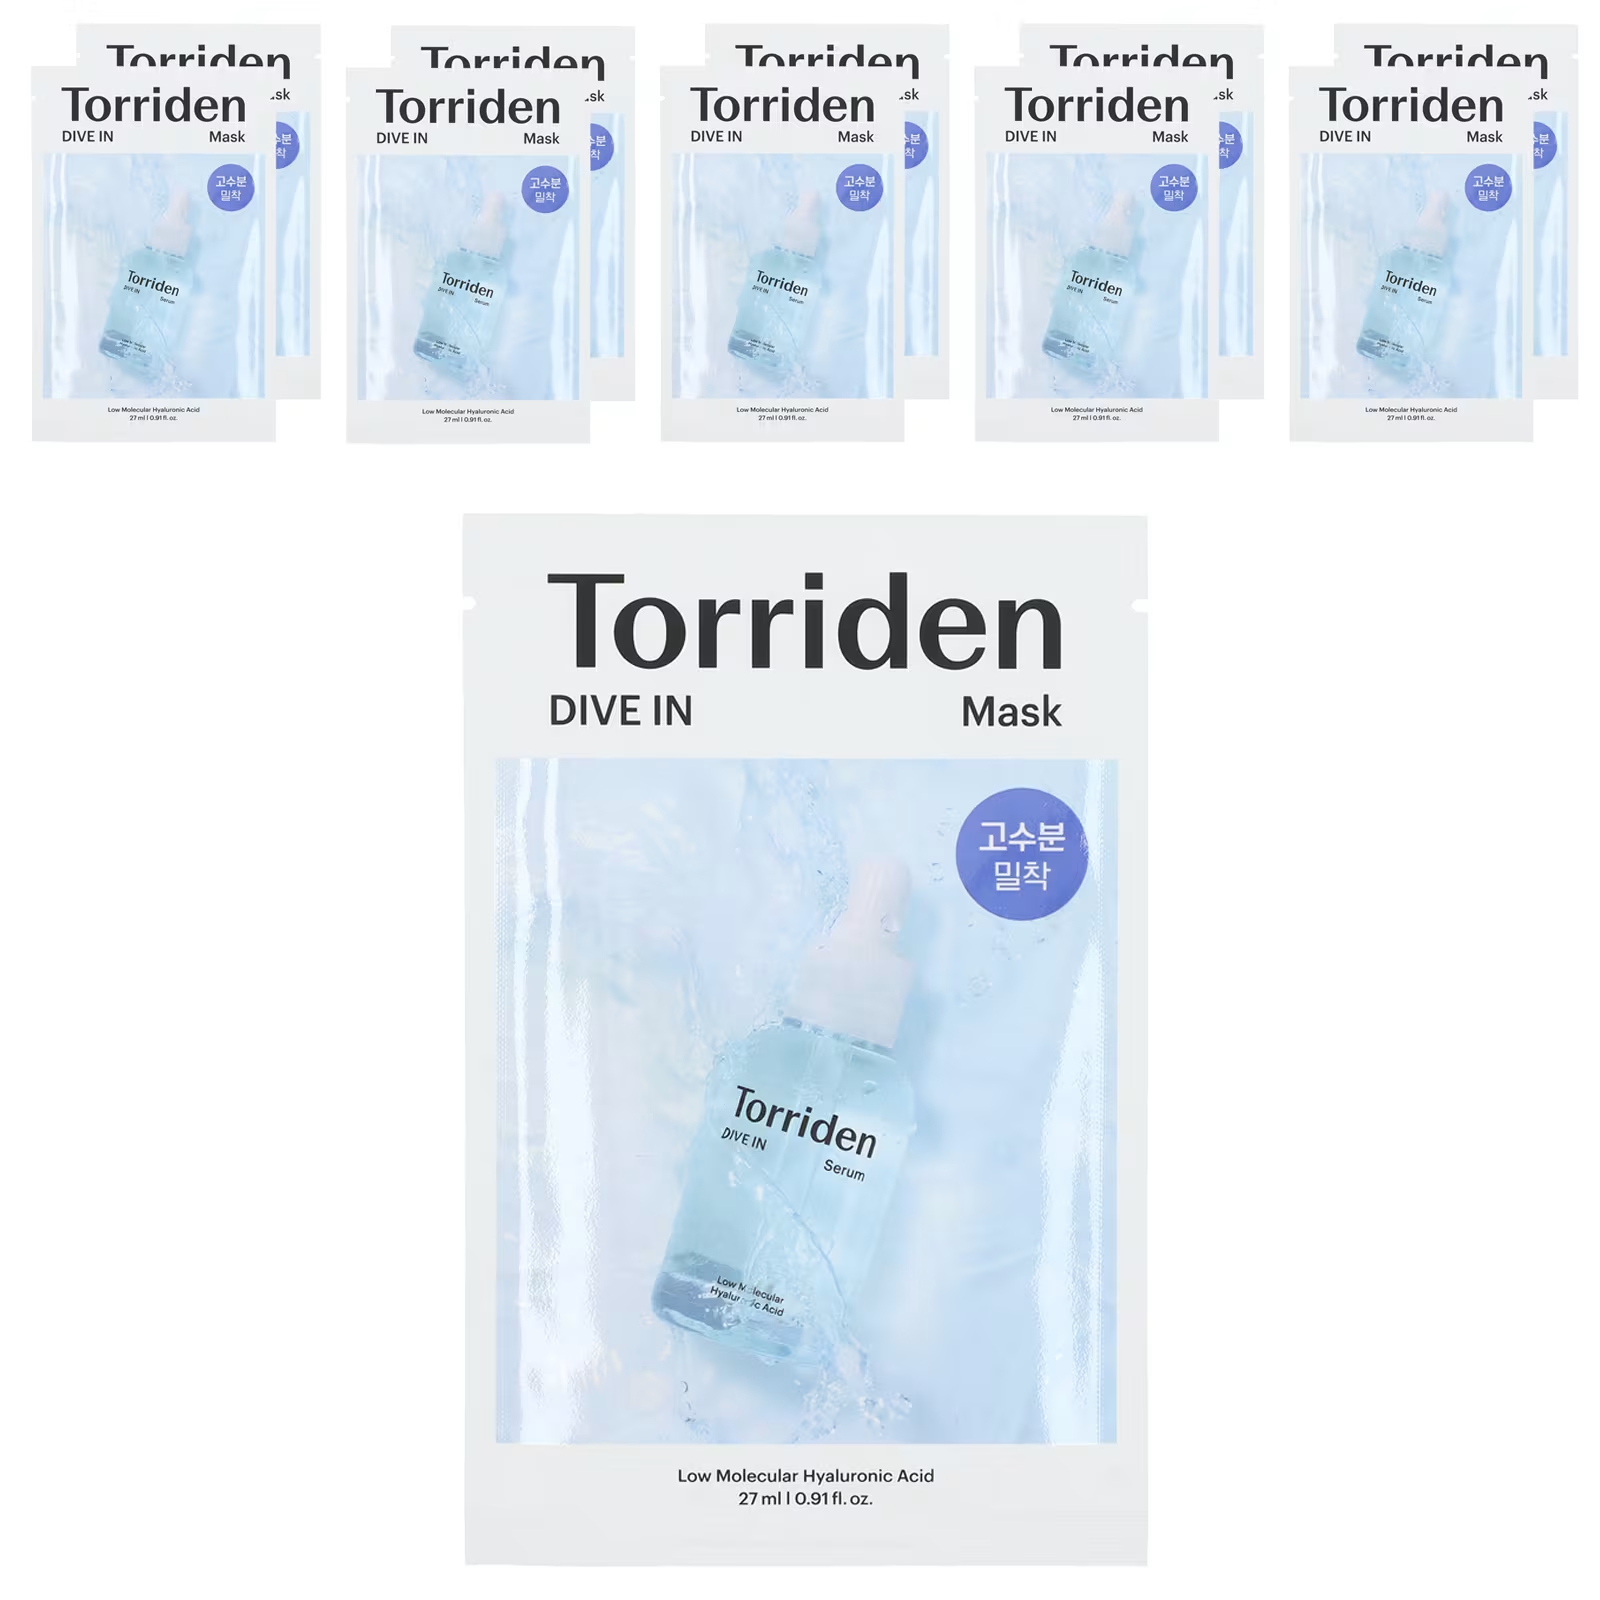 Косметическая маска Torriden Dive In с низкомолекулярной гиалуроновой кислотой, 10 листов маски по 0,91 жидкой унции (27 мл) каждый